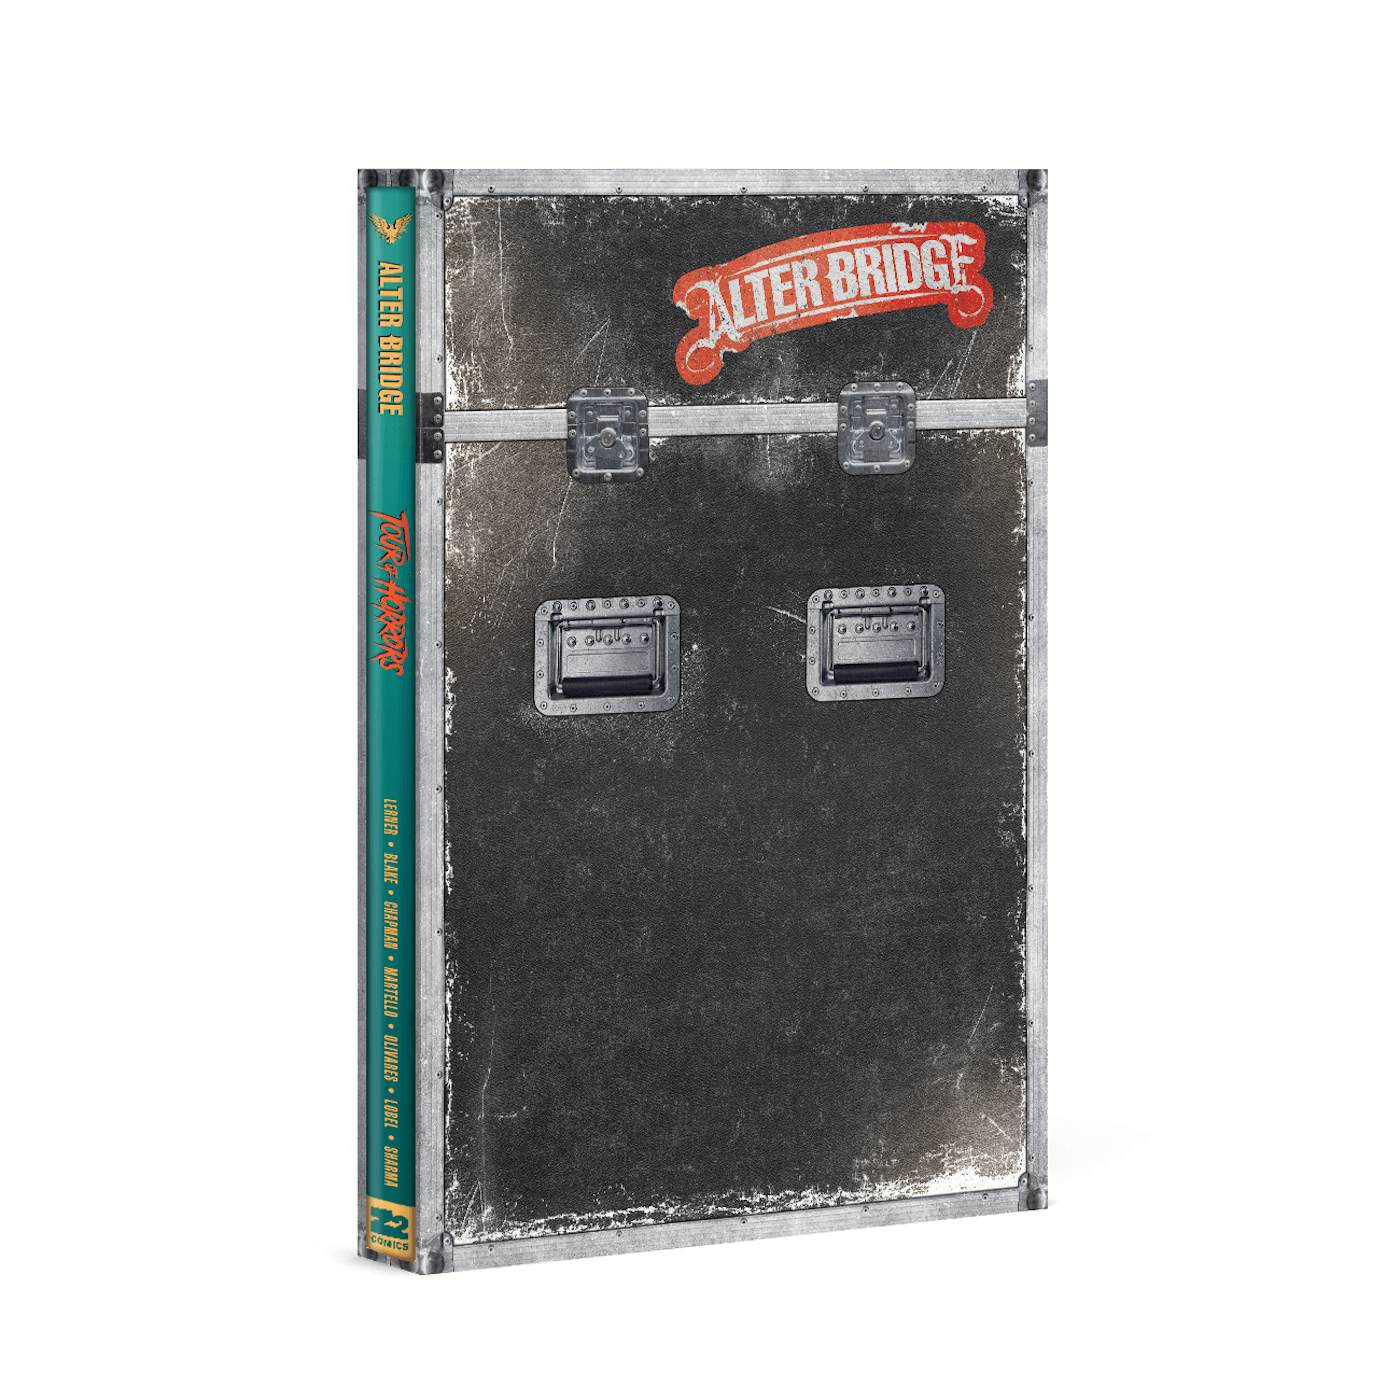 Alter Bridge: Tour of Horrors - Deluxe Book